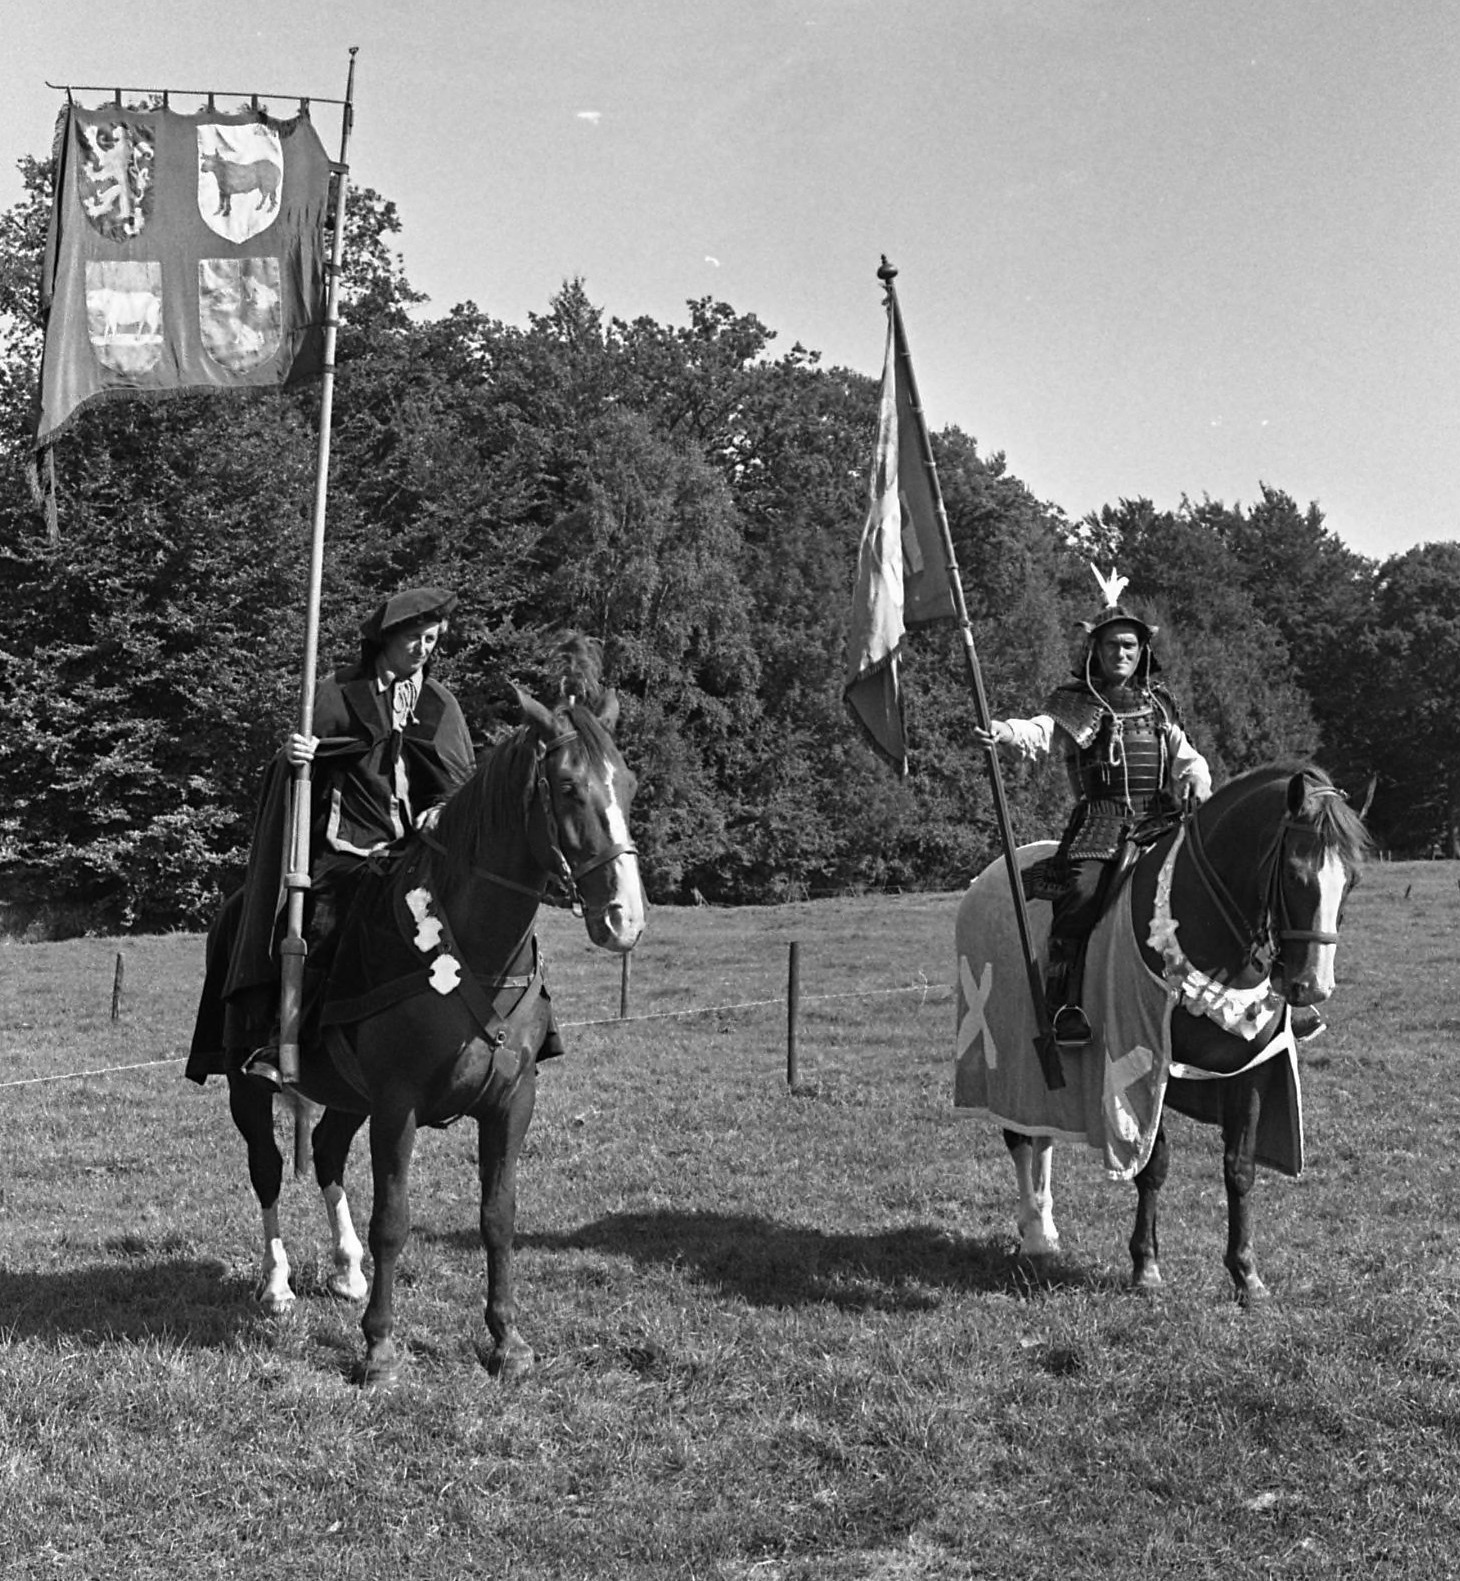 Twee ridders bij een gildefeest in Vught (1971). De ridders uit het verhaal zullen er vast een heel stuk angstaanjagender hebben uitgezien...